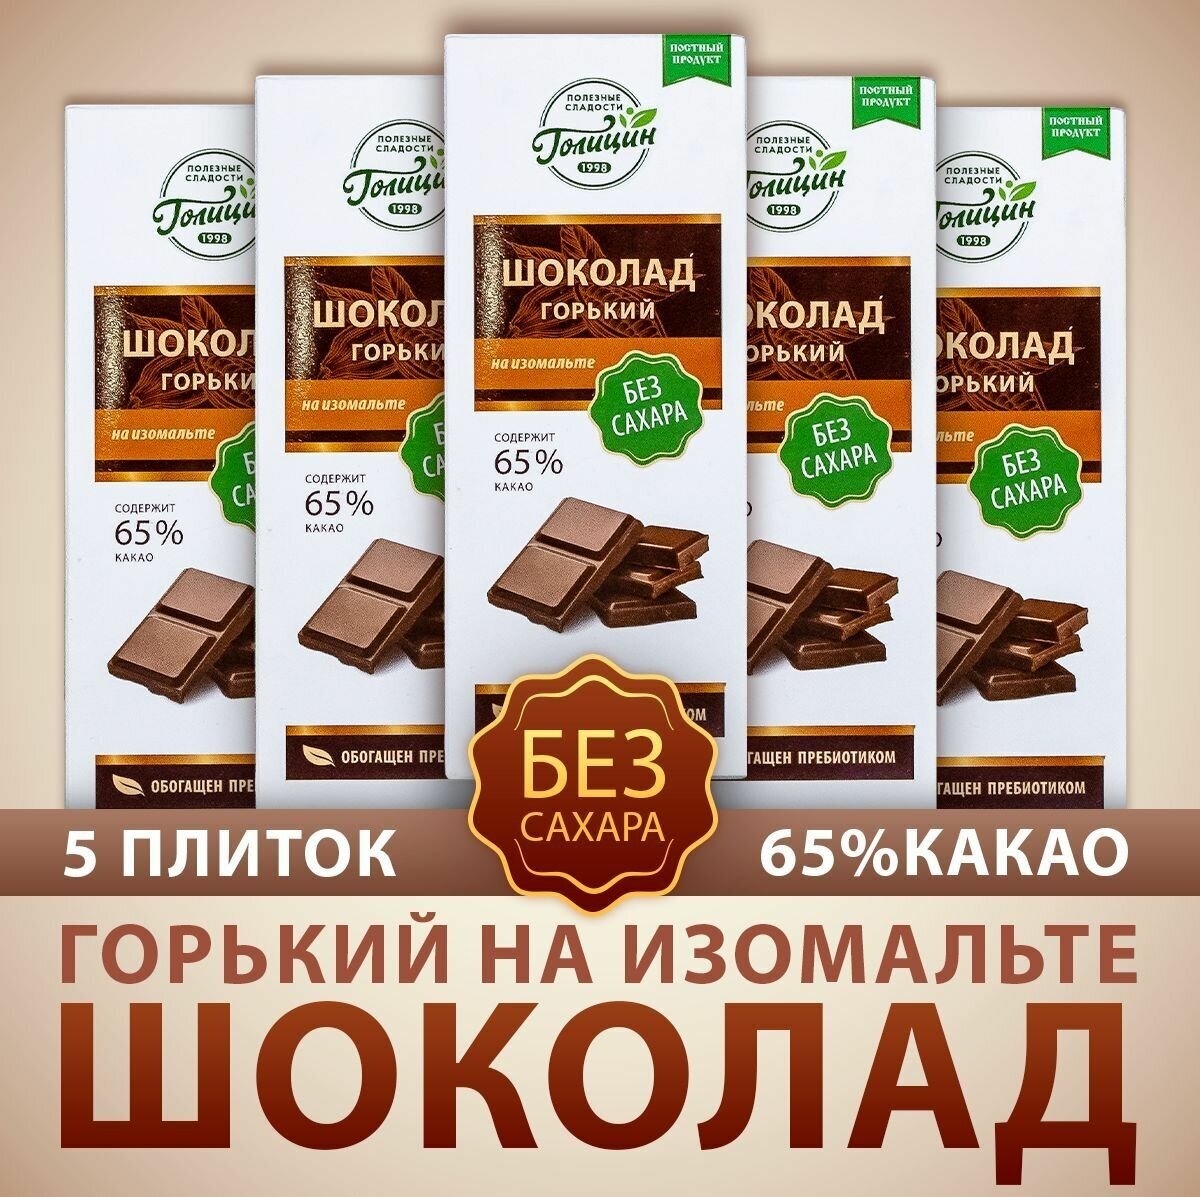 Шоколад Голицин Горький 65% какао натуральный без сахара на изомальте набор 5 шт. по 60 г полезные сладости - фотография № 1